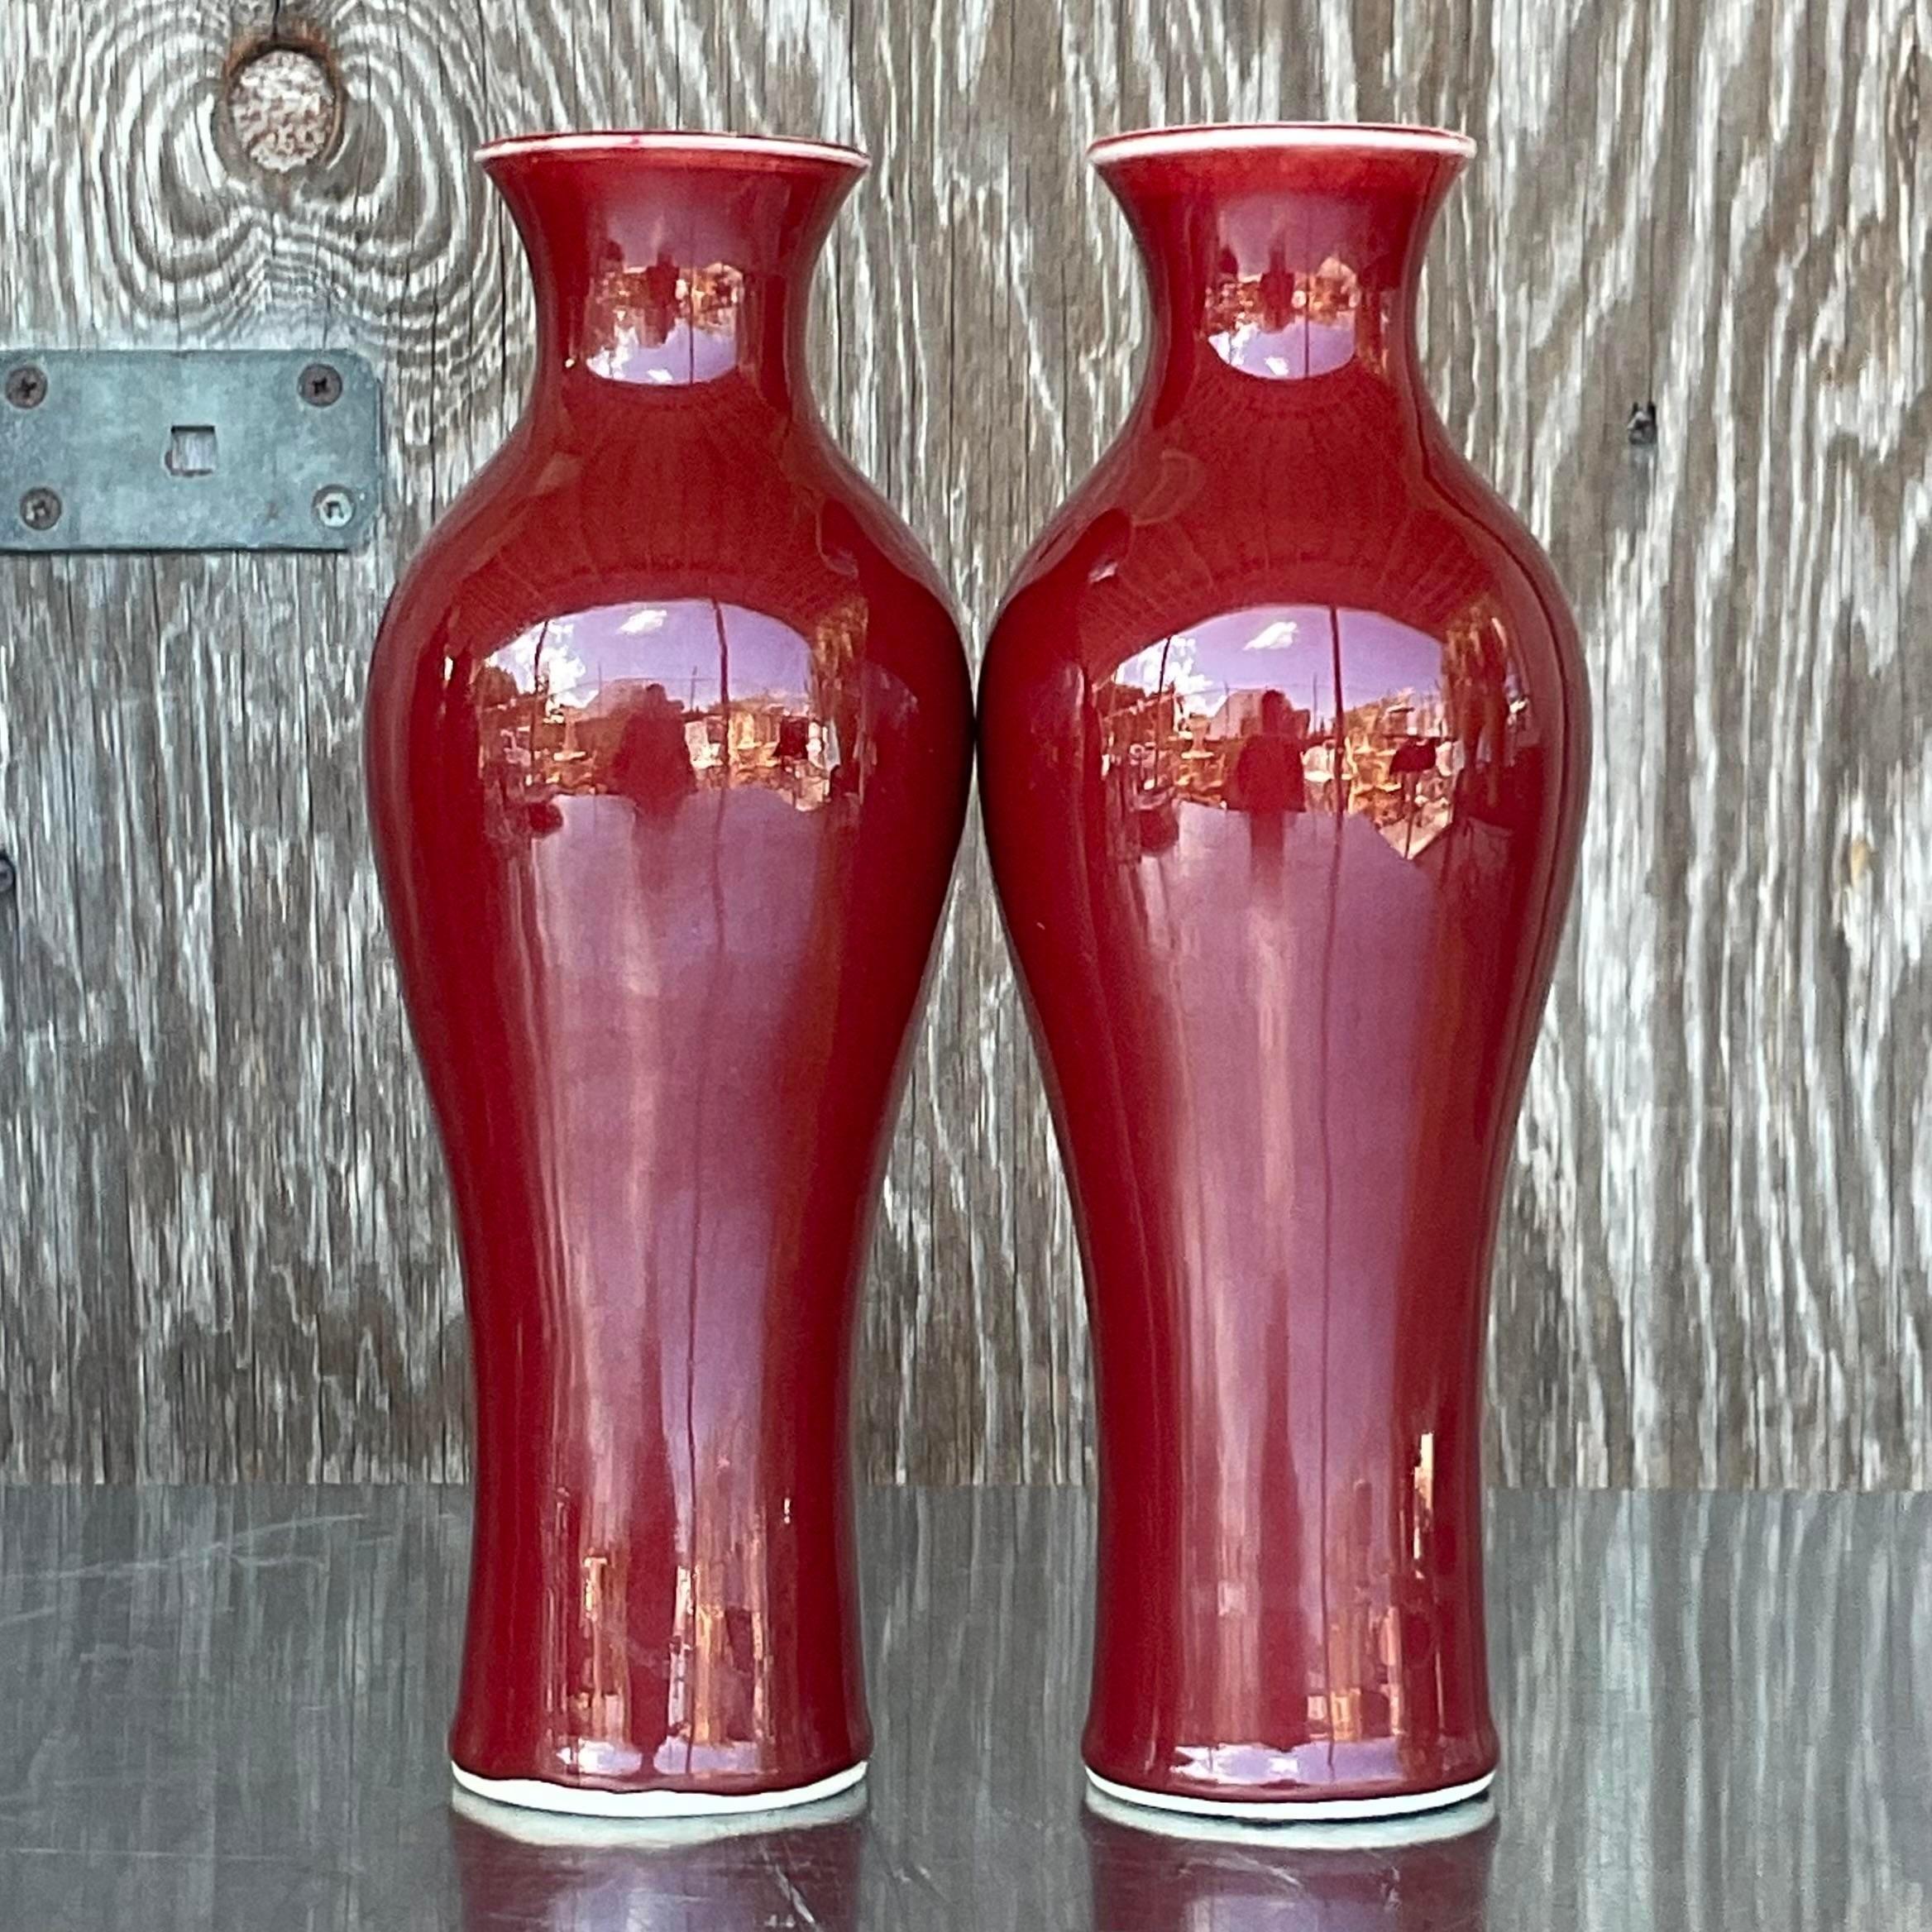 Ein fabelhaftes Paar asiatischer Vintage-Vasen. Eine schicke glasierte SDB-Keramik in einem leuchtenden, tiefen Rot. Im Stil der Glasur der ikonischen 